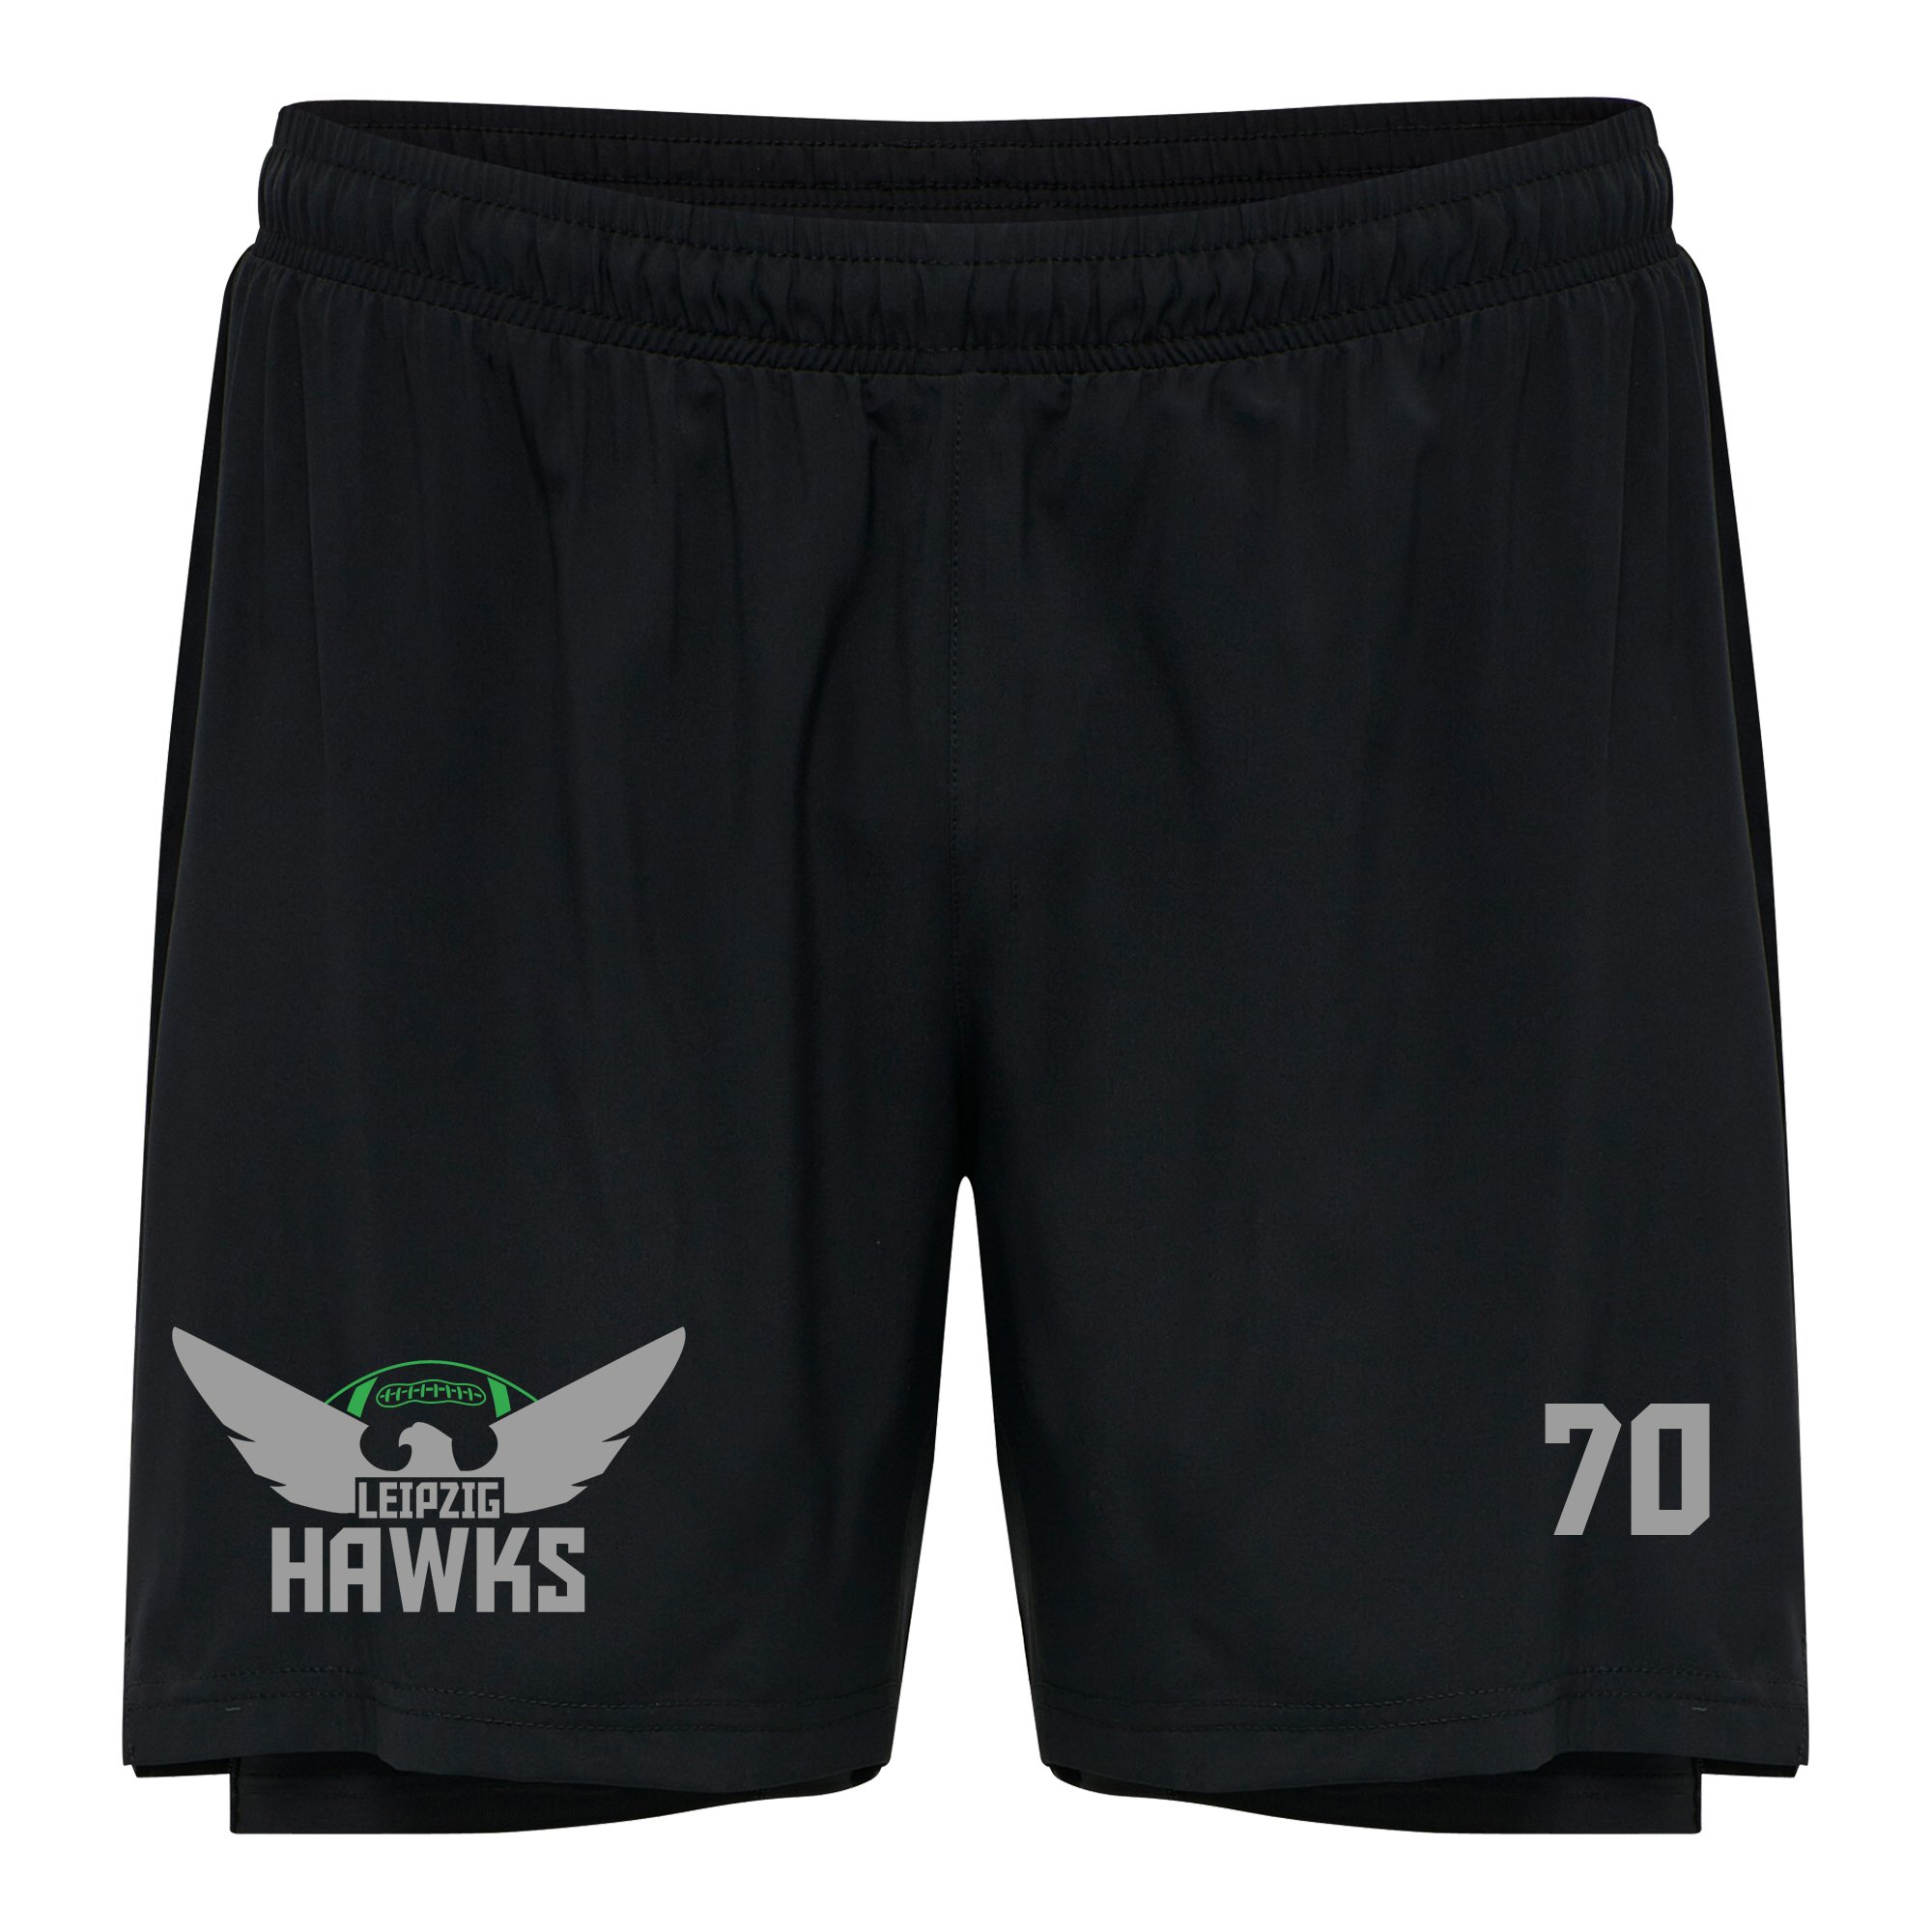 Leipzig Hawks 2-In-1 Shorts